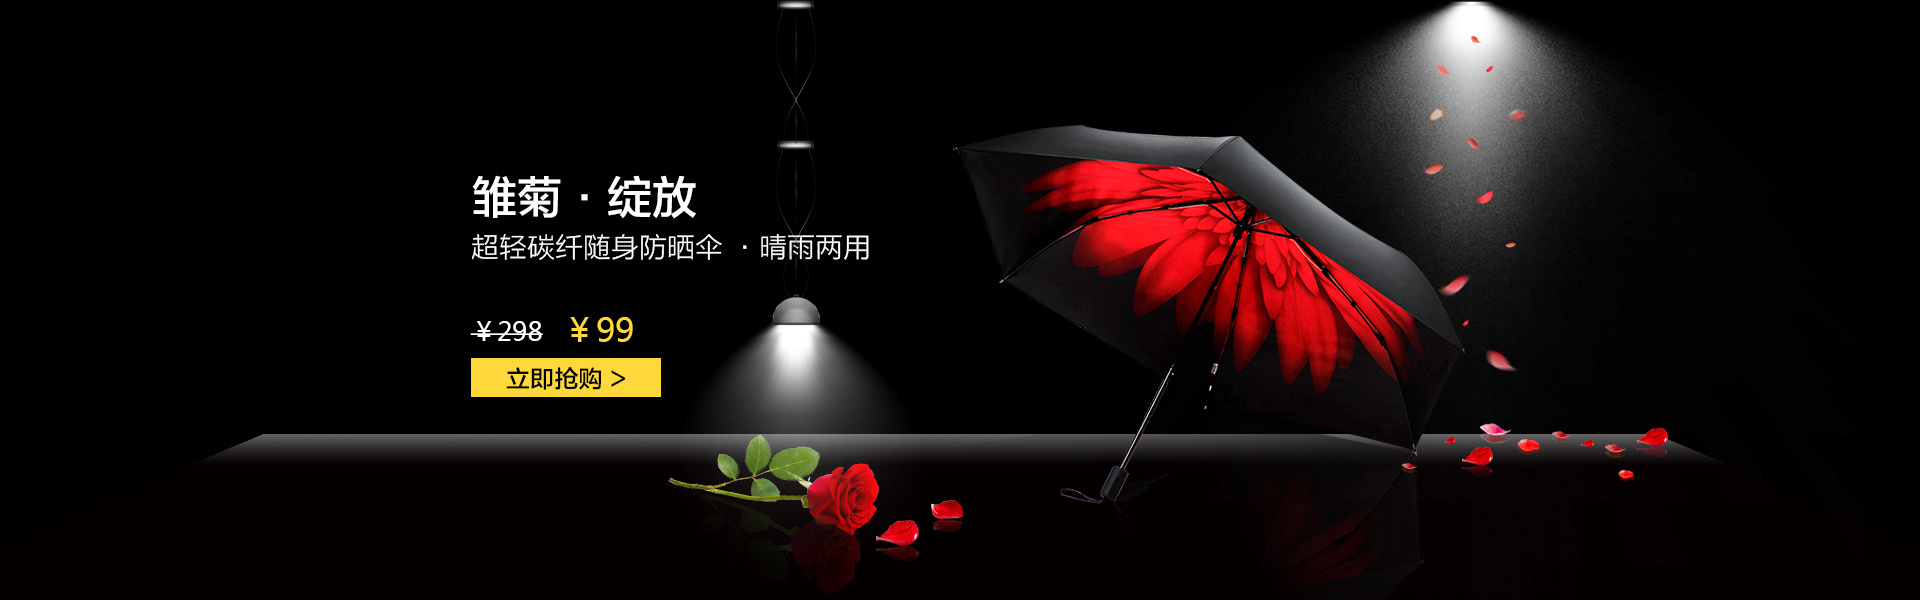 雨伞广告创意文案图片